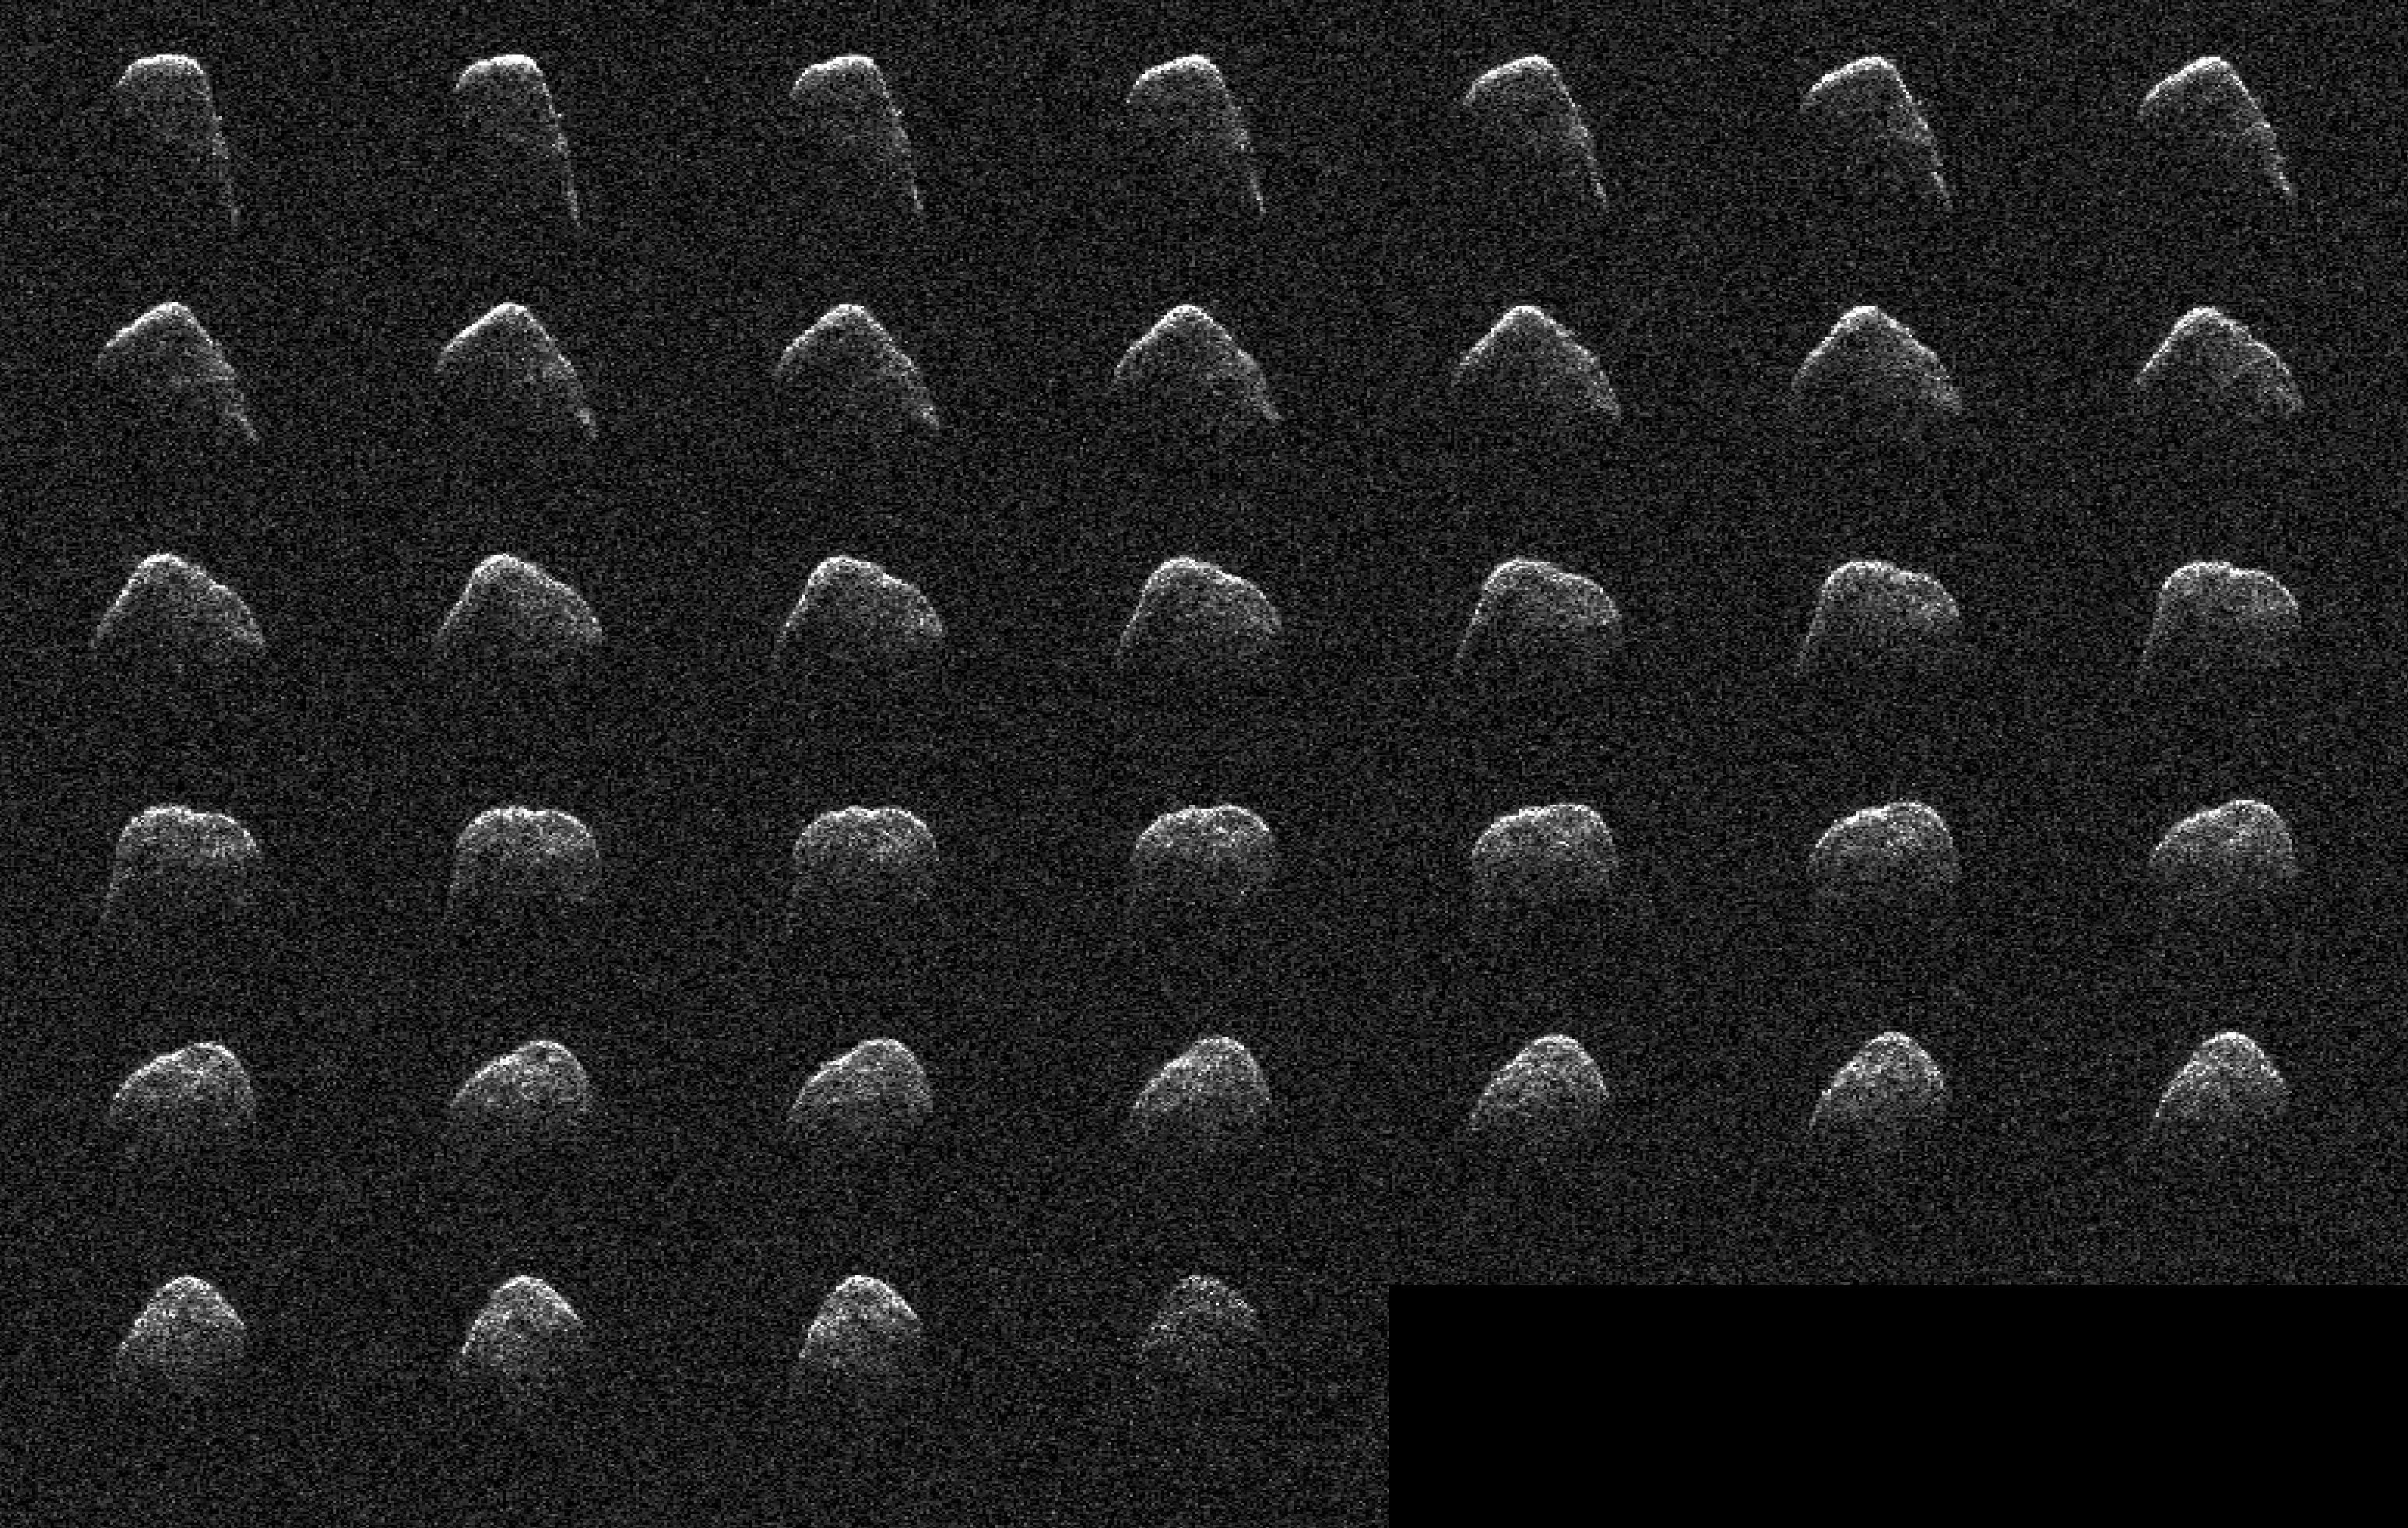 PIA24566: Radar Observations of Asteroid 4660 Nereus